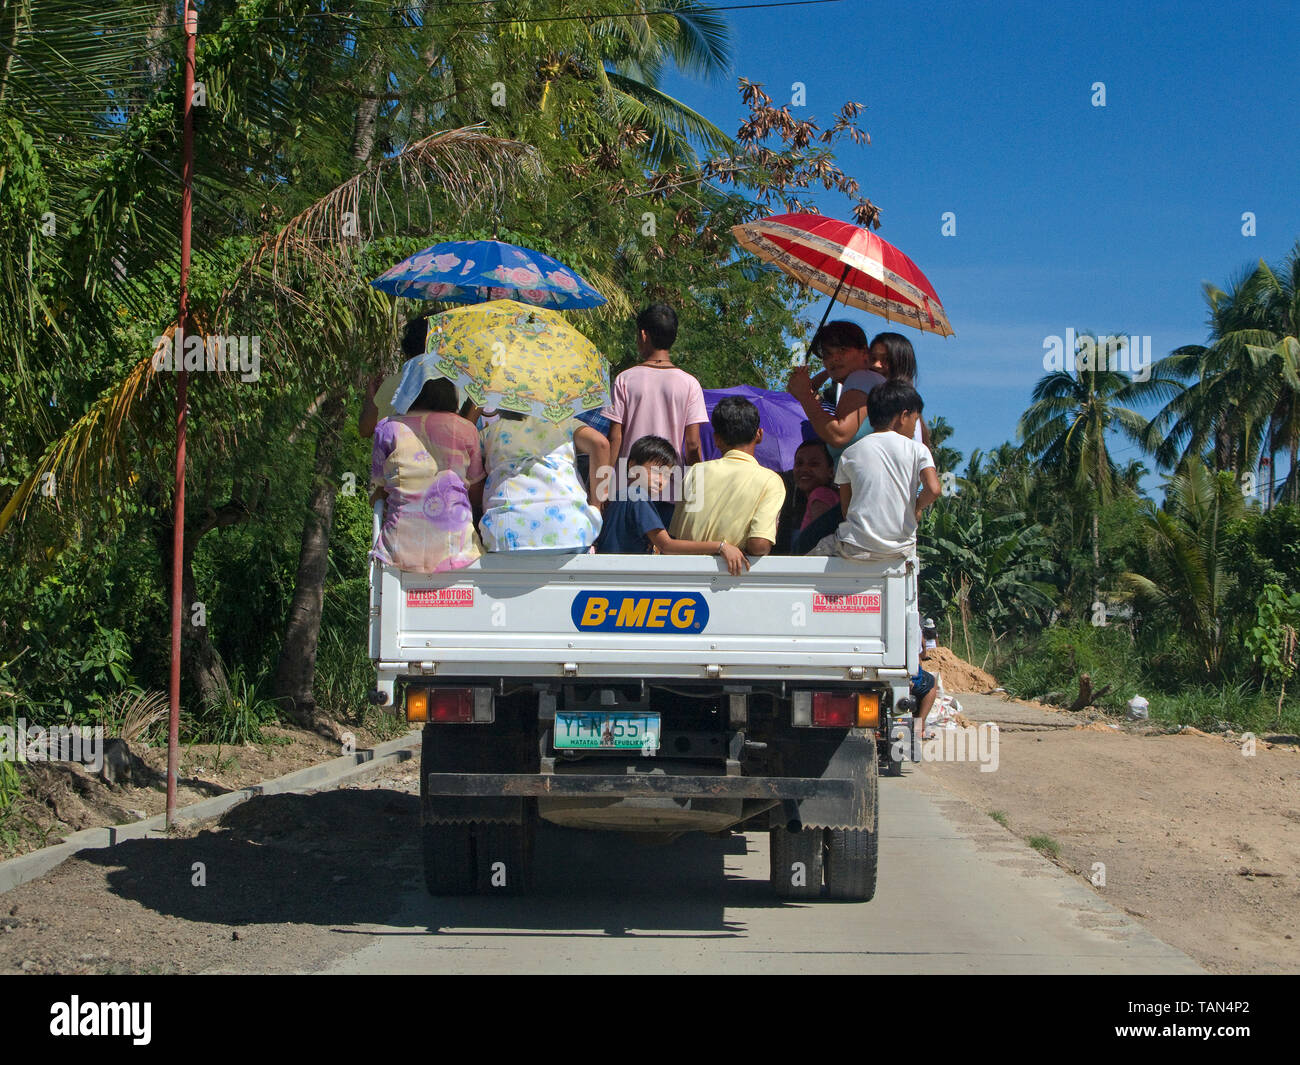 La gente del posto su un carrello, comune del trasporto pubblico nelle Filippine, Moalboal, Cebu, Visayas, Filippine Foto Stock